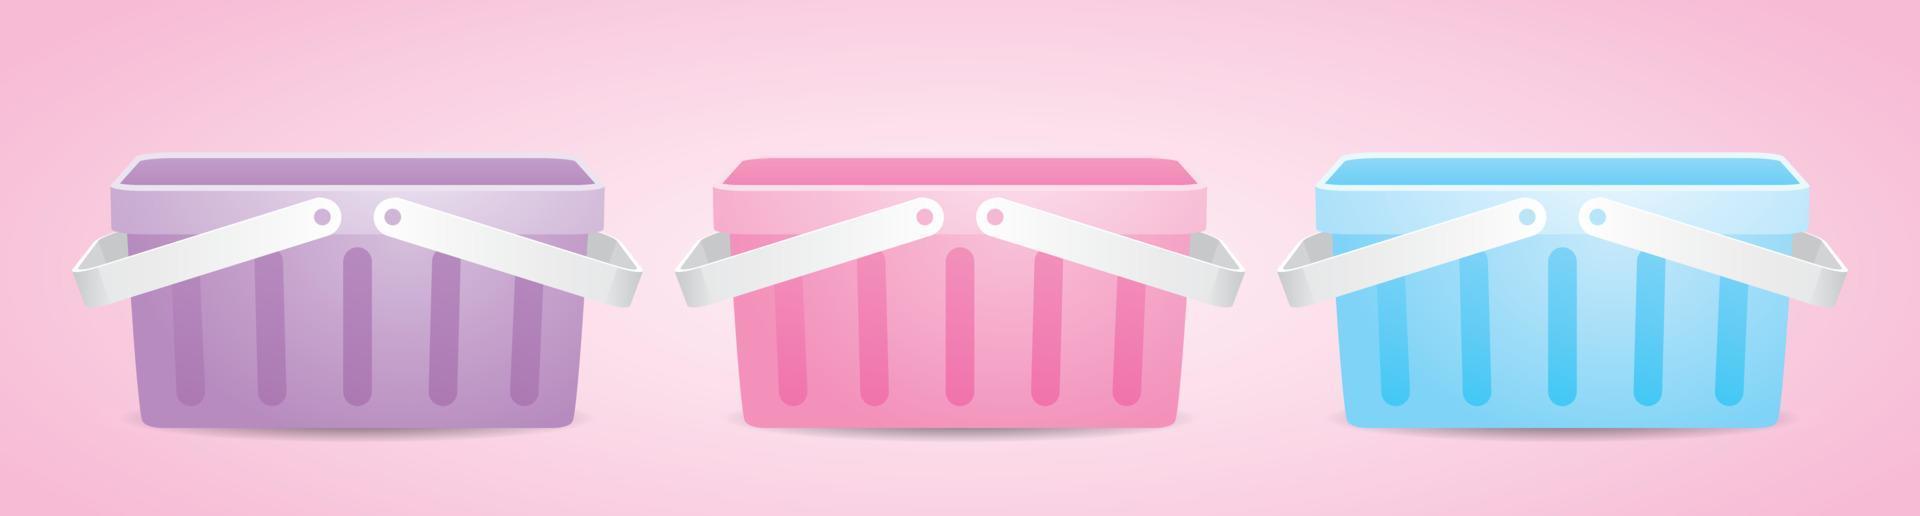 vista frontal do doce pastel roxo e rosa e azul cesta de compras vetor de ilustração 3d